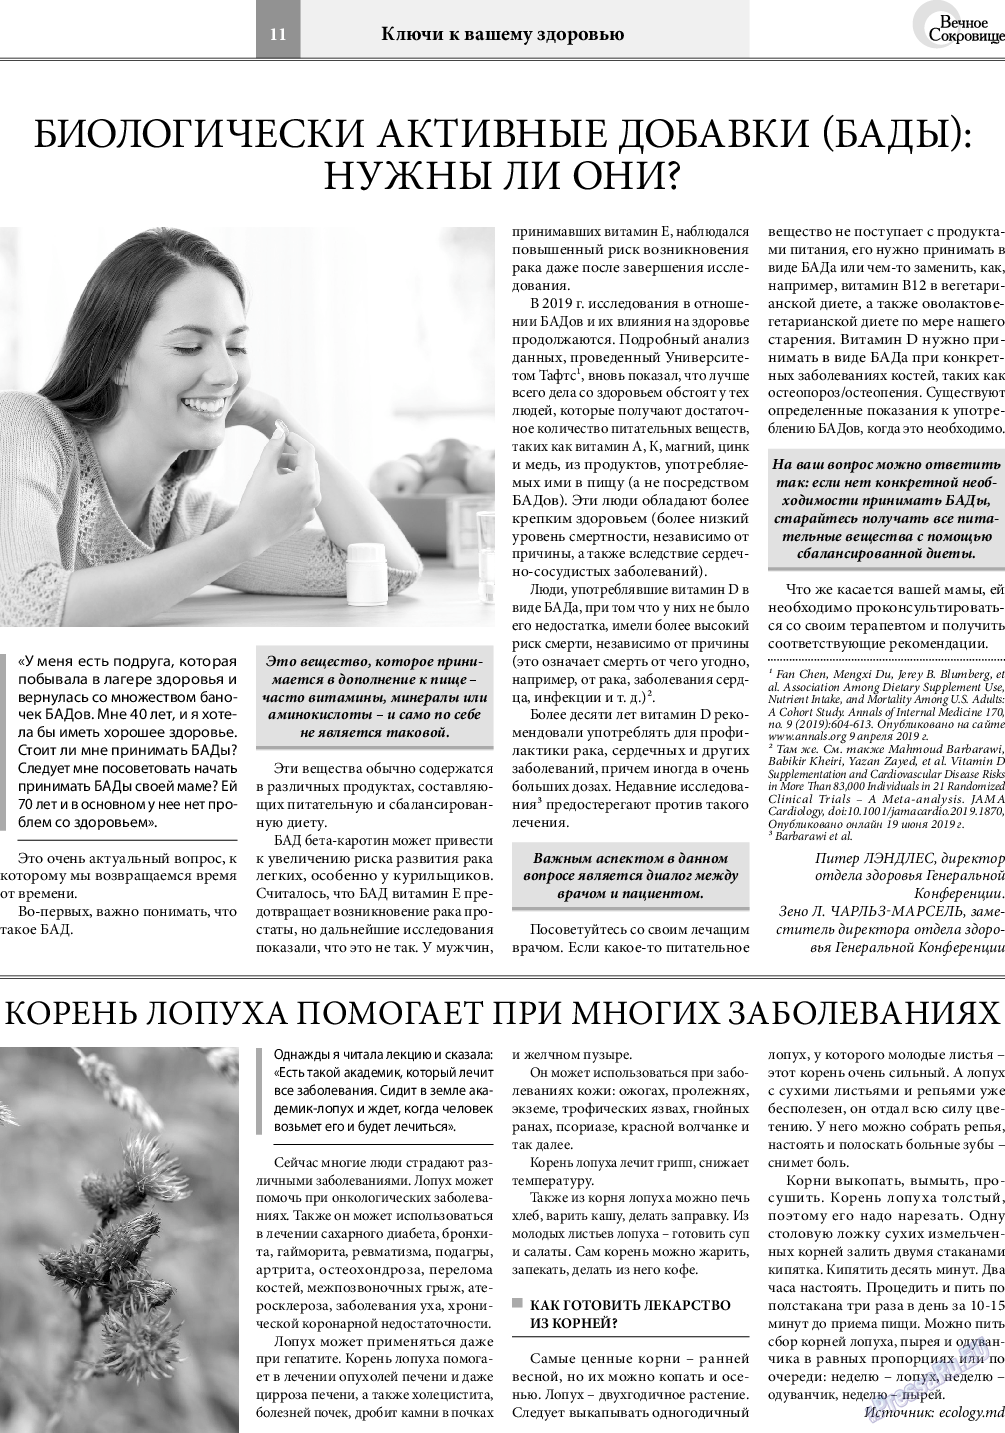 Вечное сокровище, газета. 2019 №5 стр.11